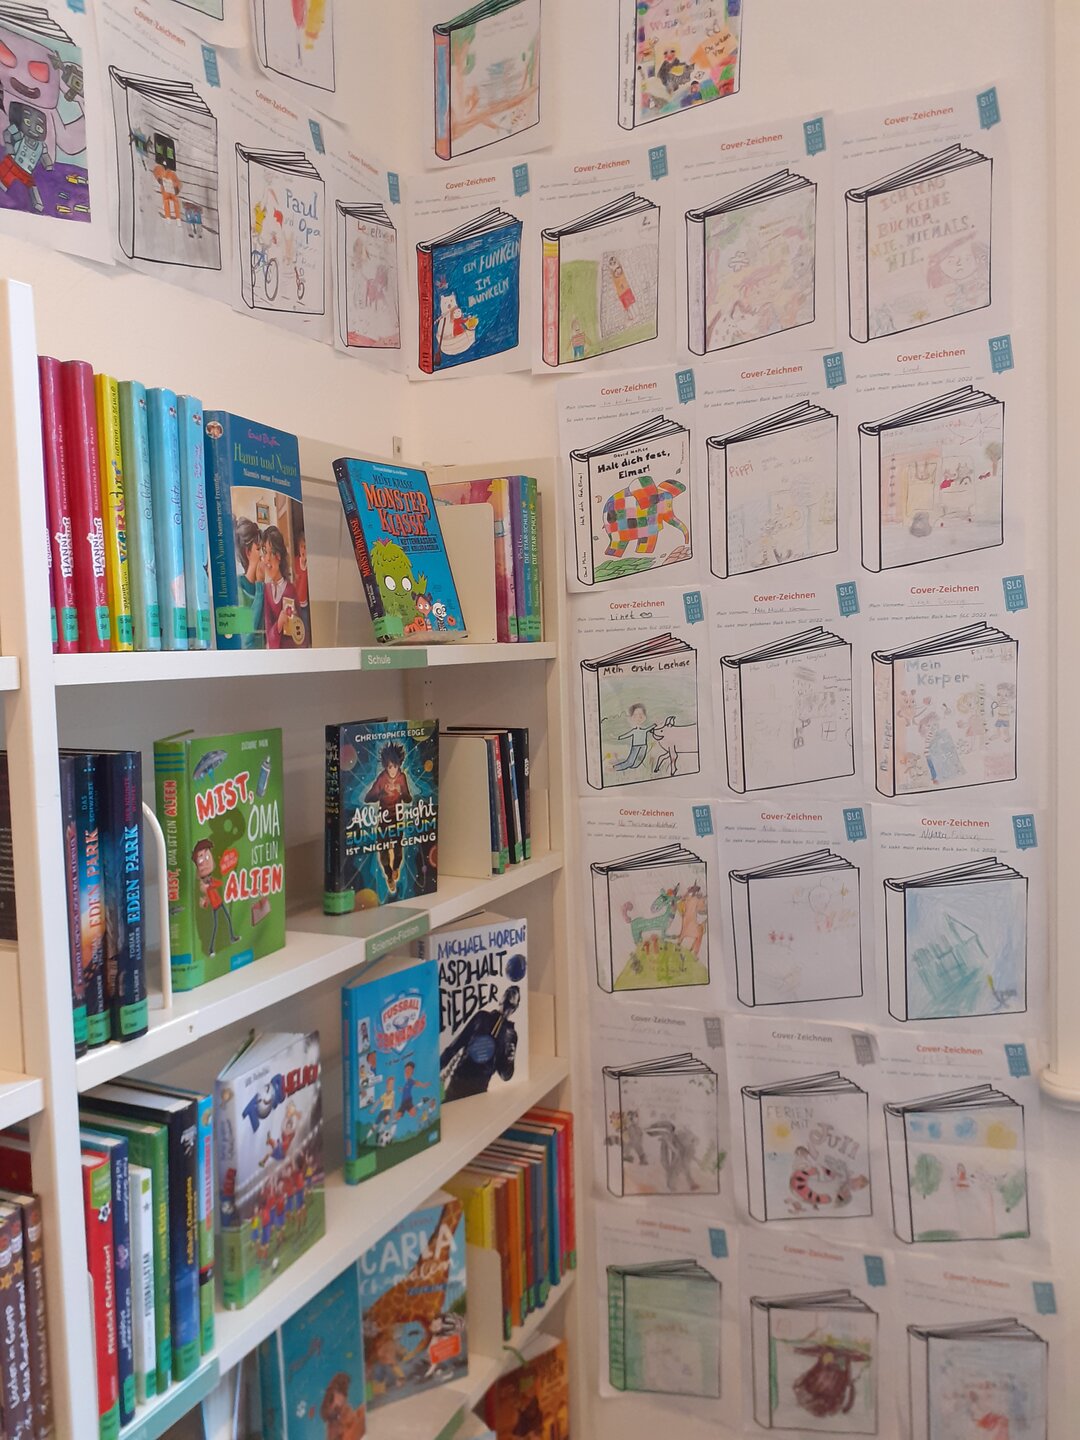 Auf der linken Seite ist ein weißes Bücherregal mit mehreren Kinderbüchern zu sehen. Rechts an der Wand hängen analog gestaltete Buchcover.